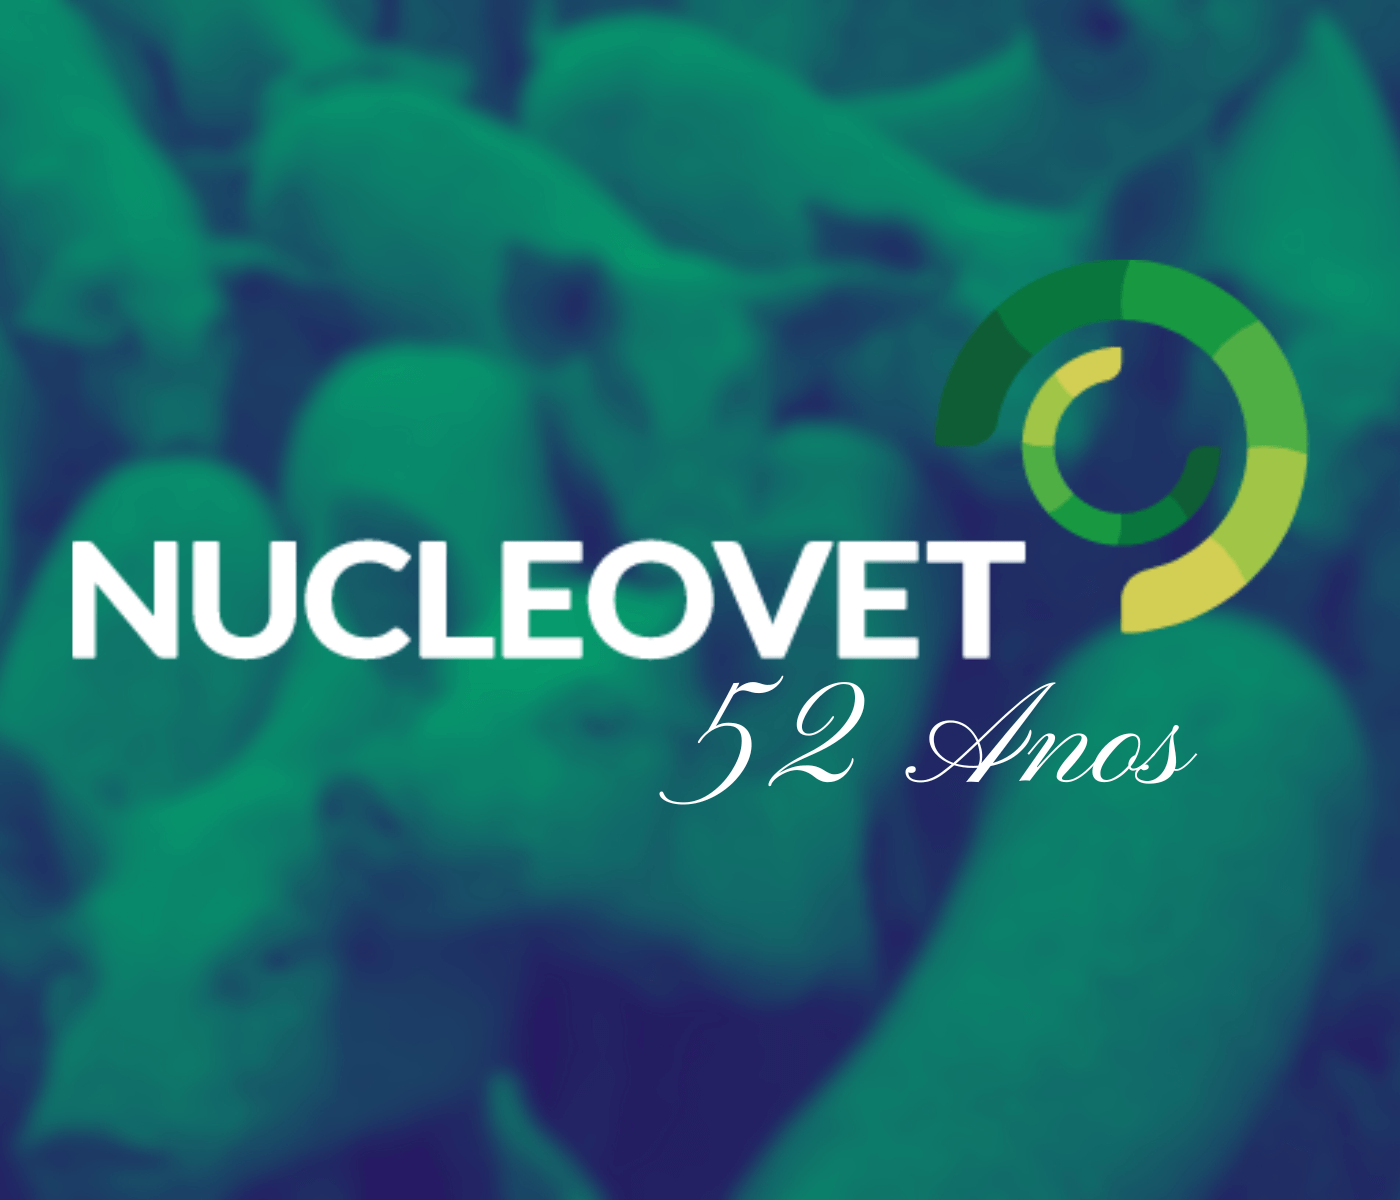 Nucleovet: 52 anos fortalecendo a classe médica veterinária e zootécnica